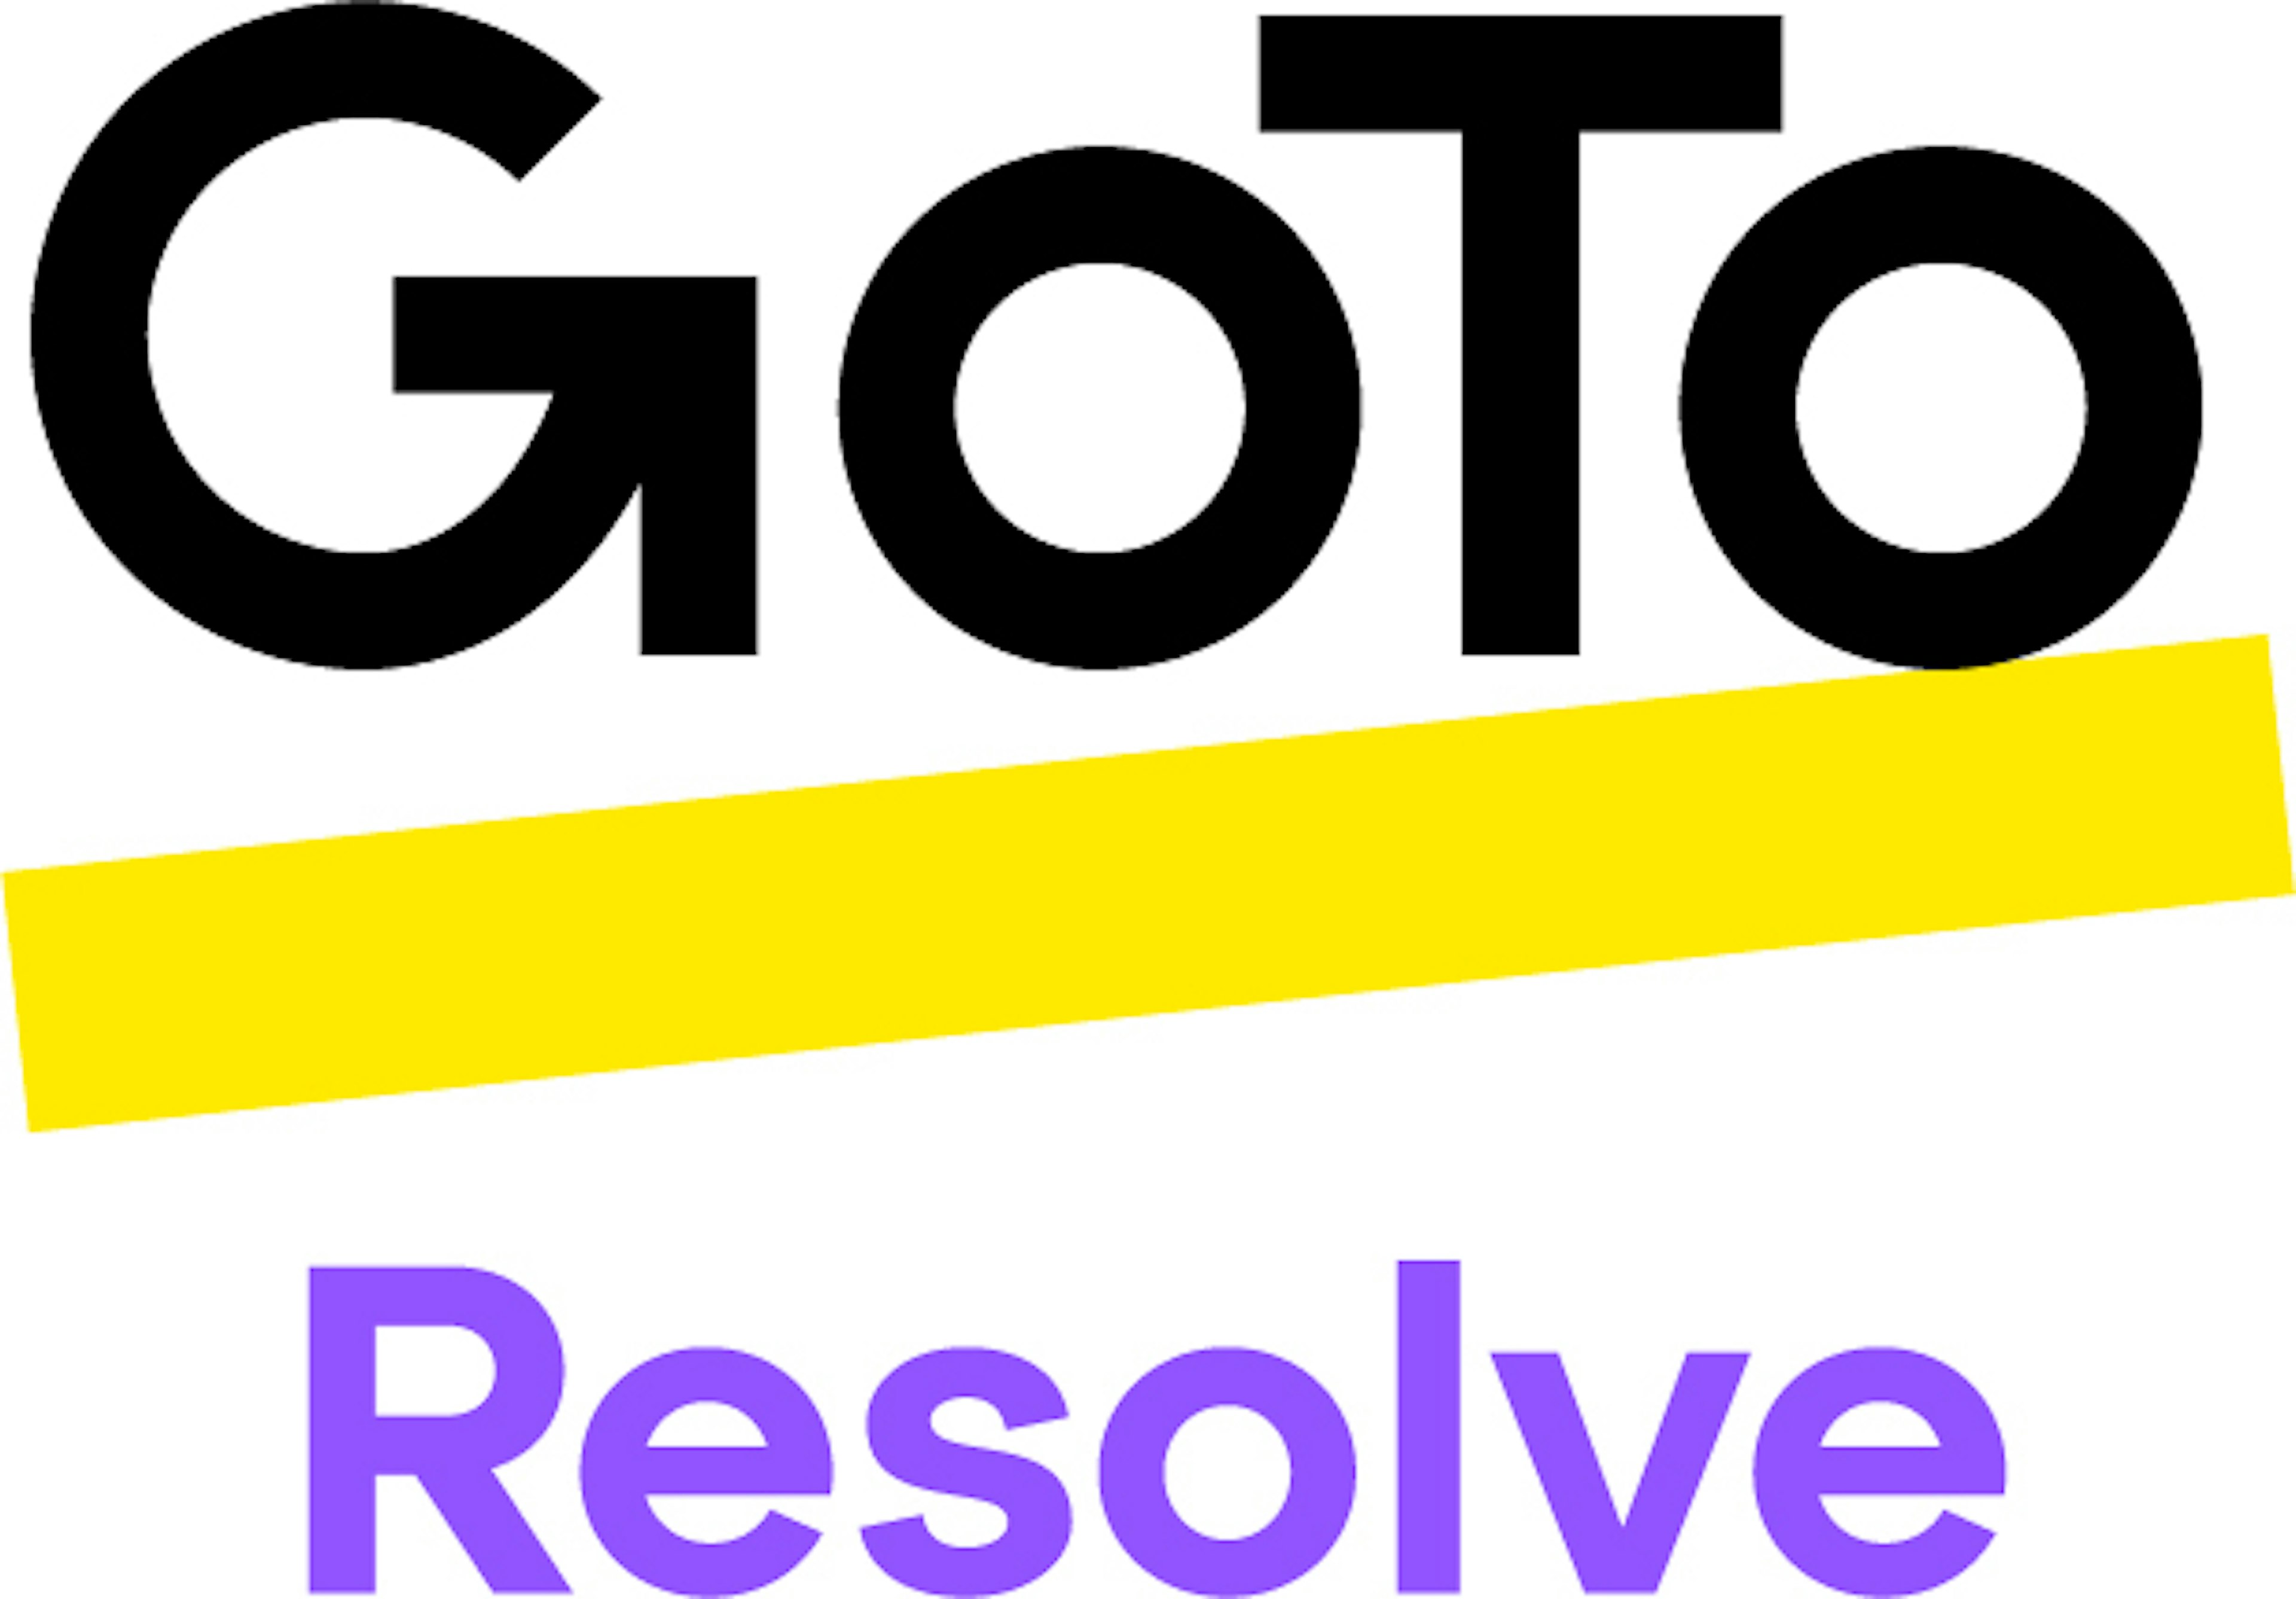 GoTo Resolve Logo